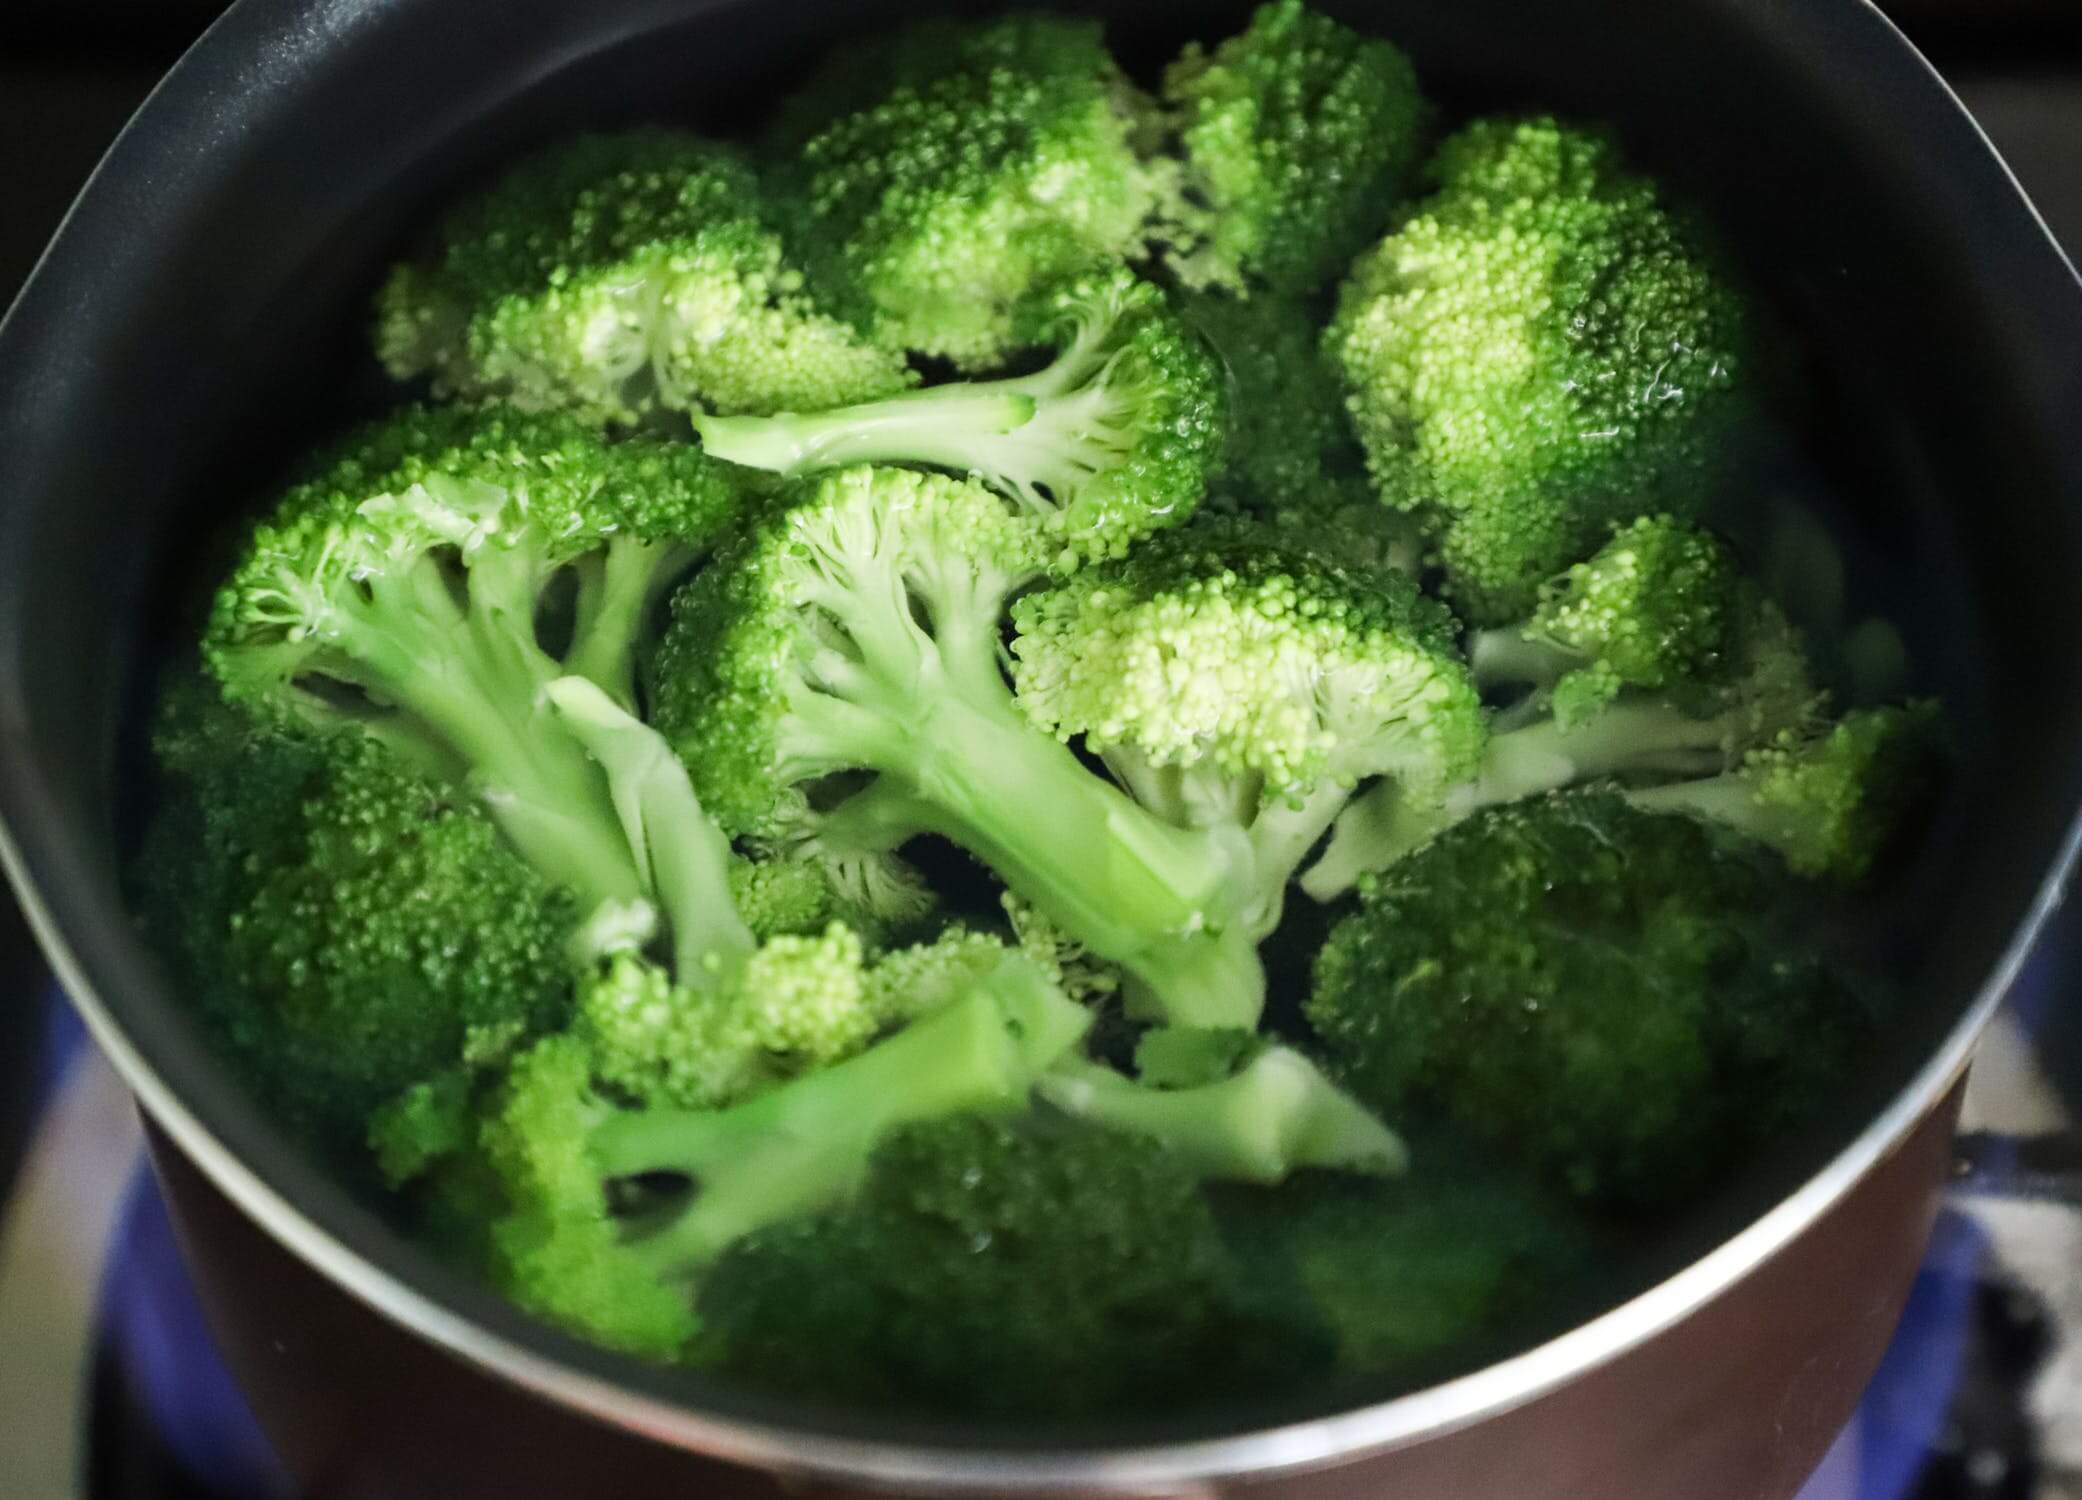 Pomișori de broccoli